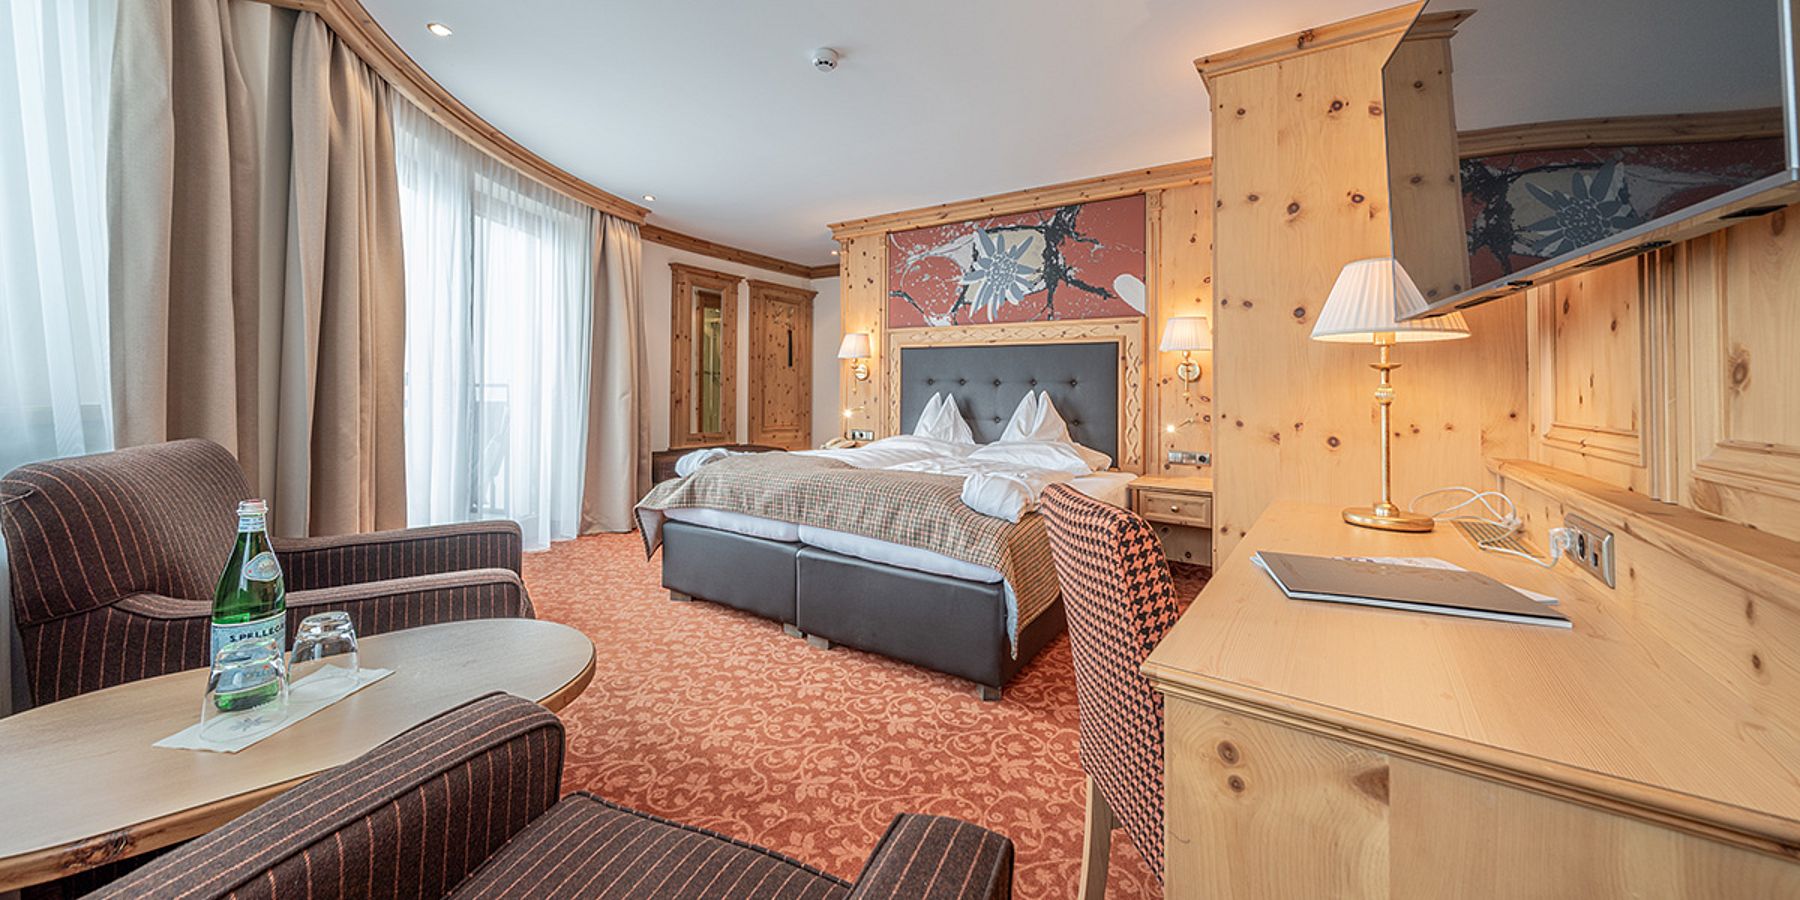 Gemütliches Doppelzimmer im Hotel Edelweiss, Ötztal - Ihr komfortabler Rückzugsort für einen perfekten Winterurlaub.